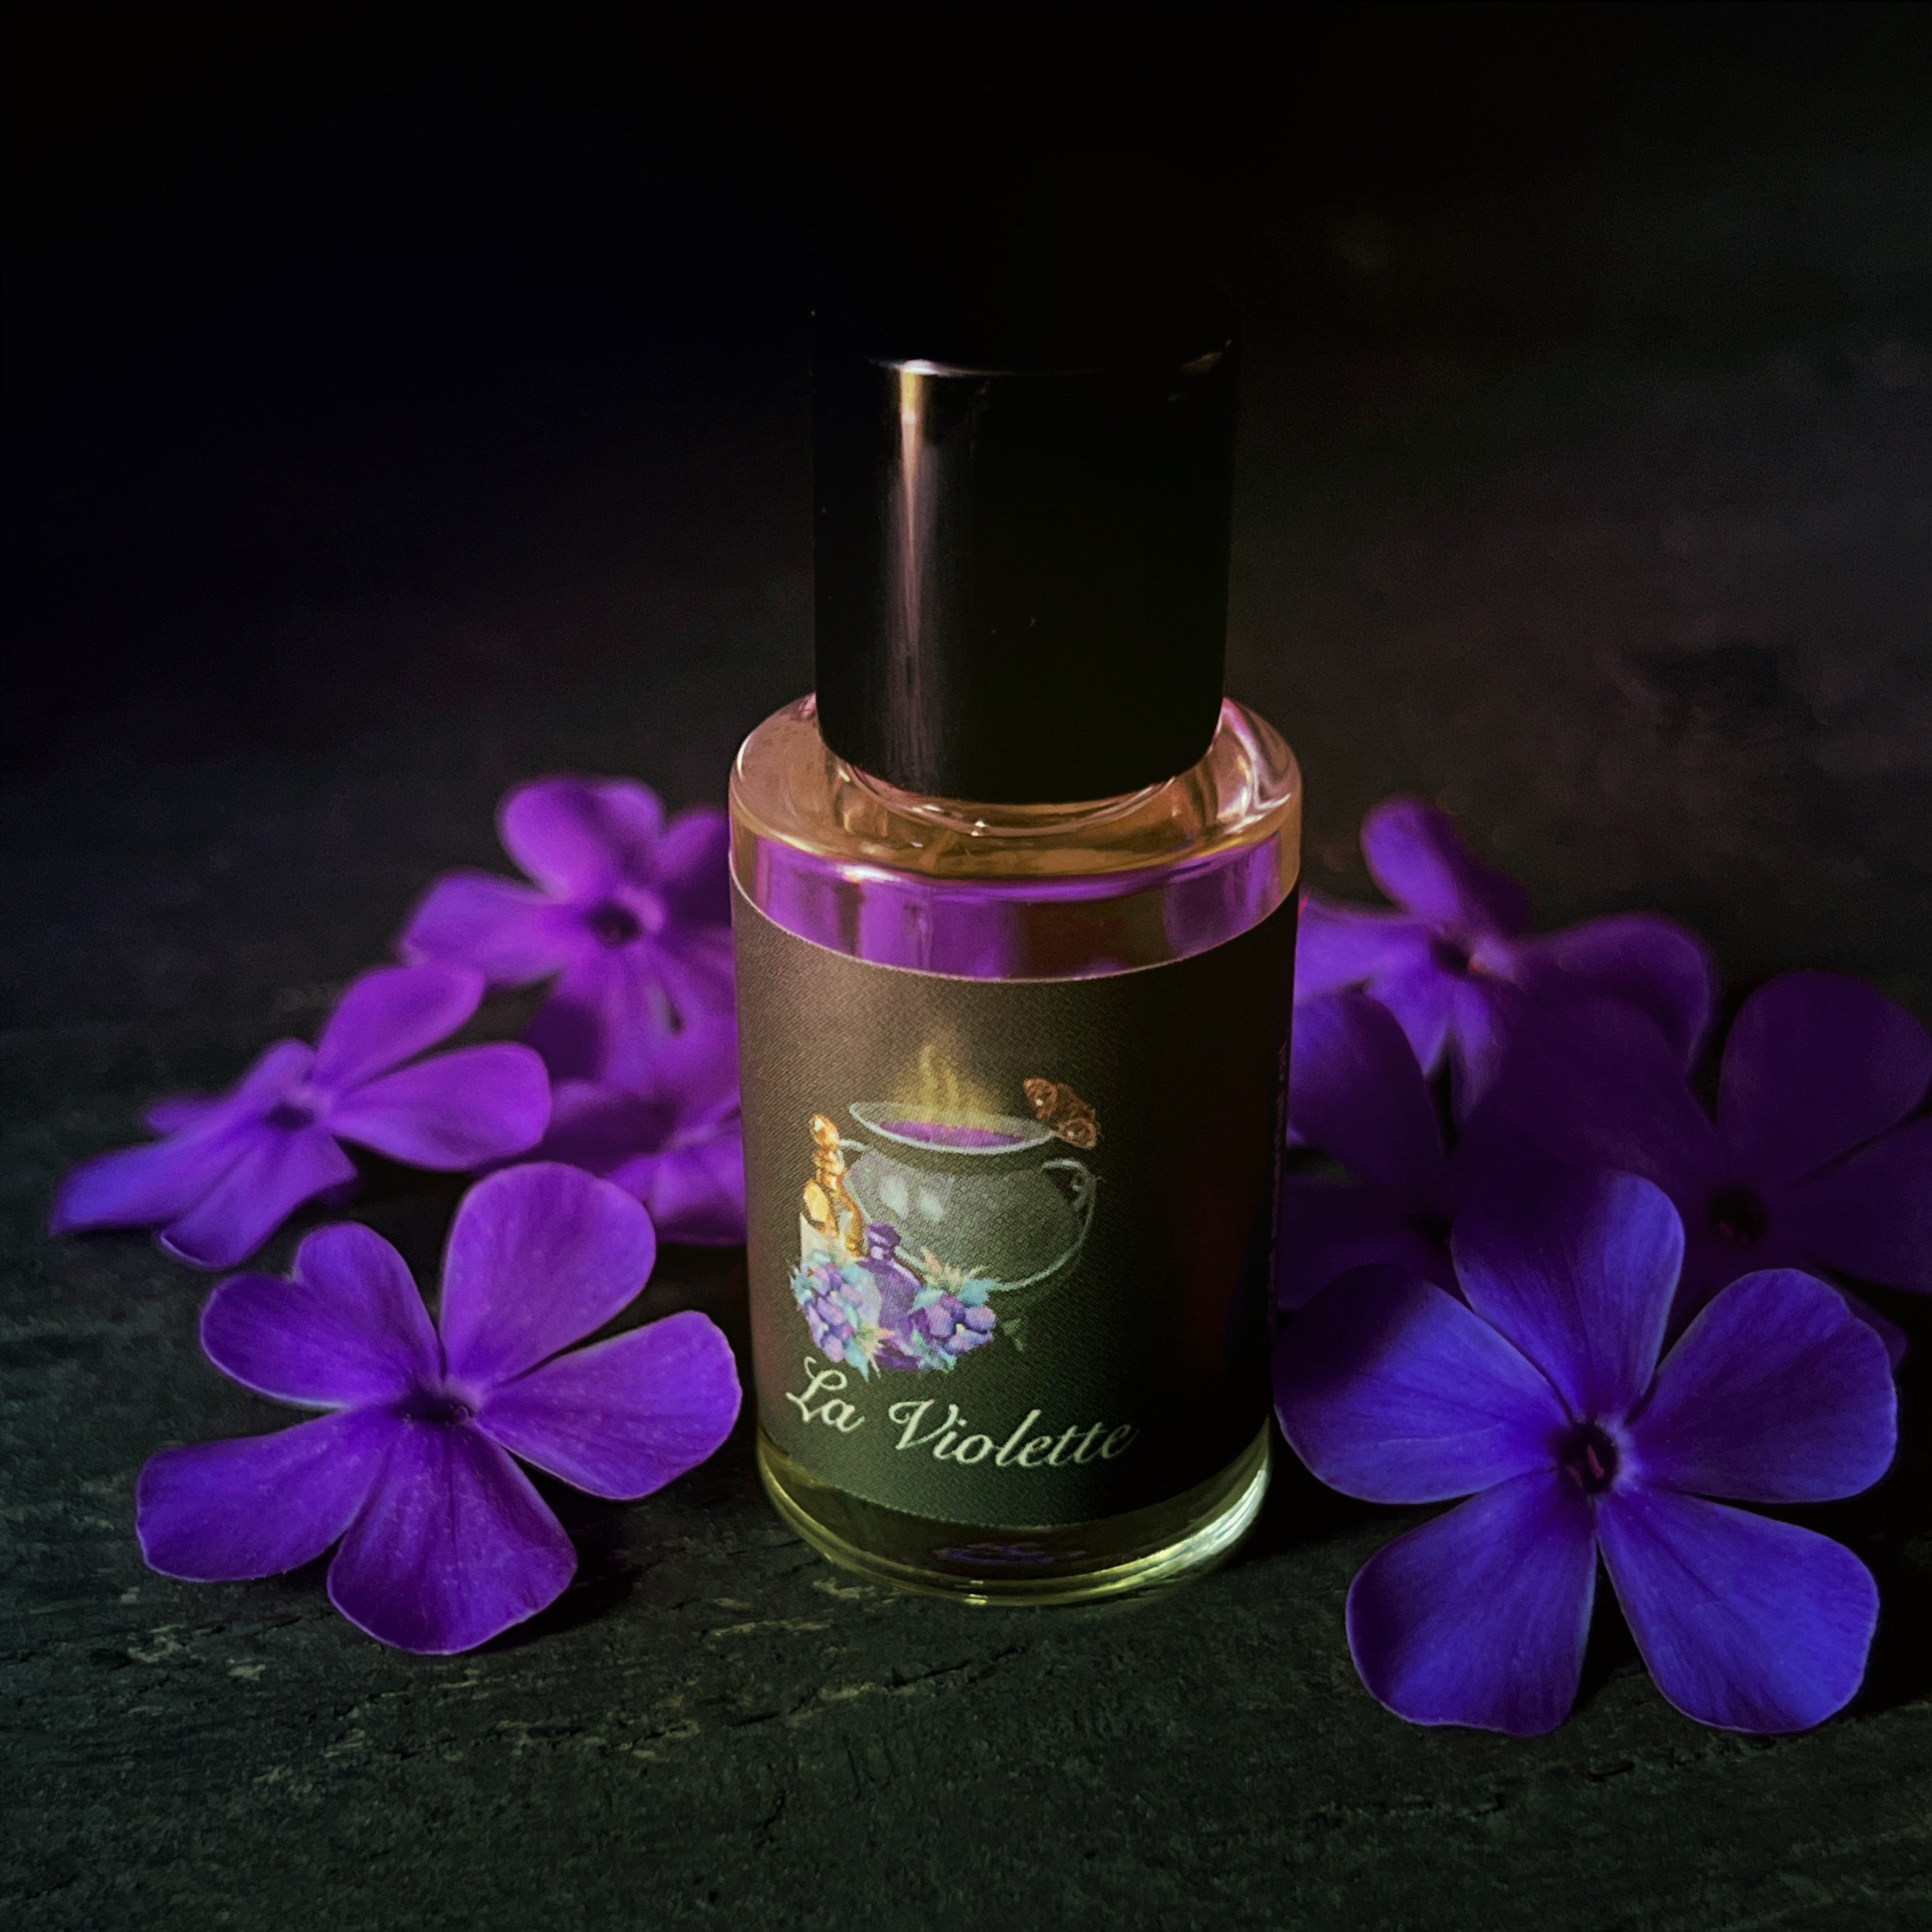 La Violette Perfume Oil